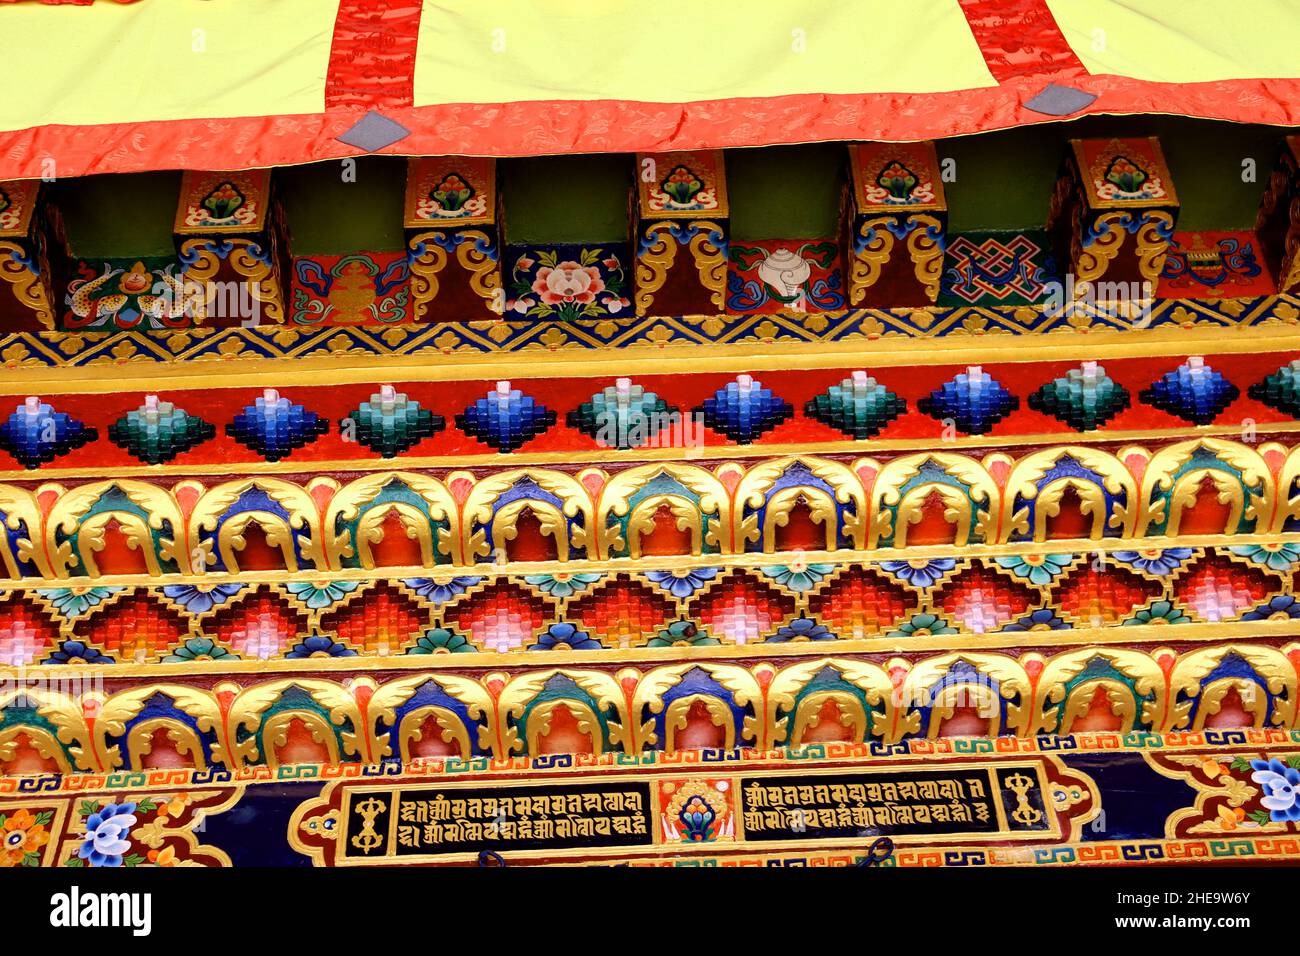 Buntes Design an einer Wand eines Klosters in Tawang Arunachal Prodesh, Indien, Kunstwerke eines Klosters, Buddhismus-Kultur, touristischer Ort in Nordostindien Stockfoto